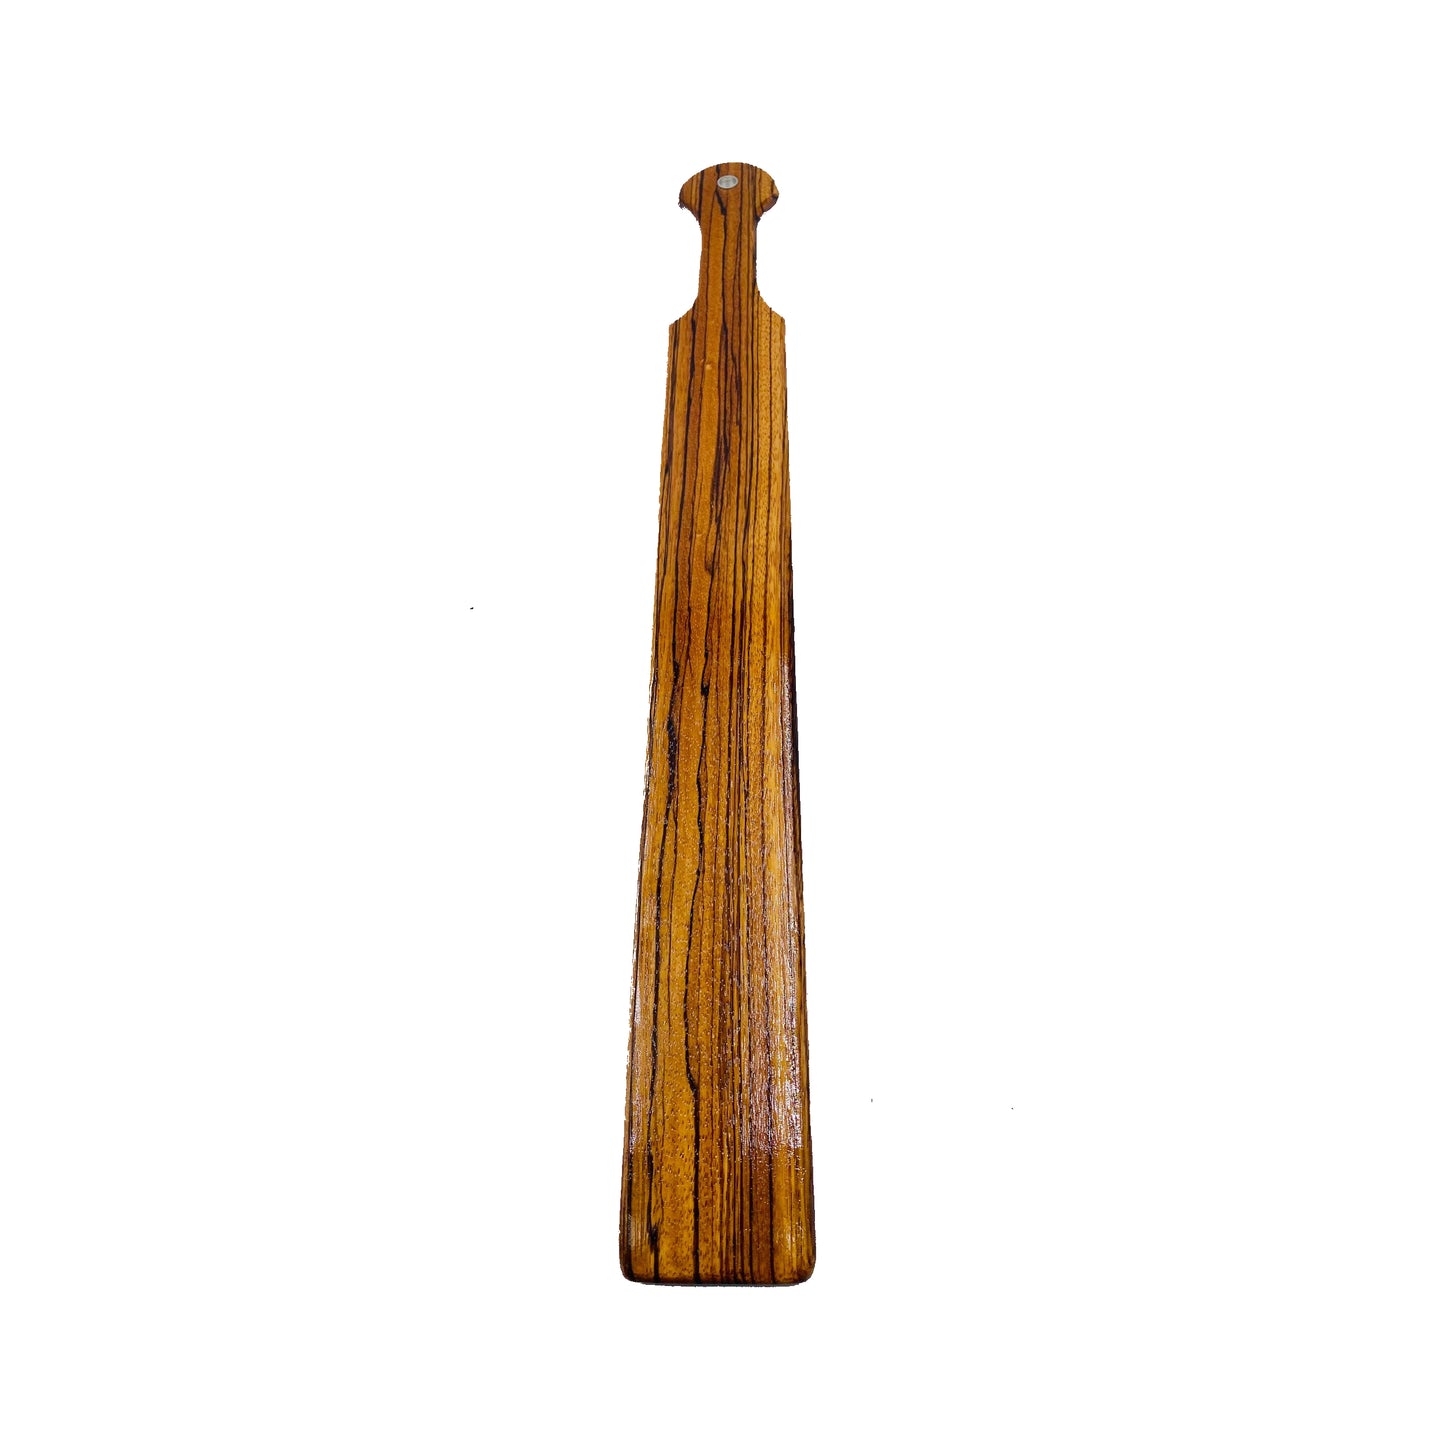 Long Wood Spanking Paddle, hardwood paddle, wood paddle, paddle, spanking paddle, paddle, bdsm, impact, punishment, discipline